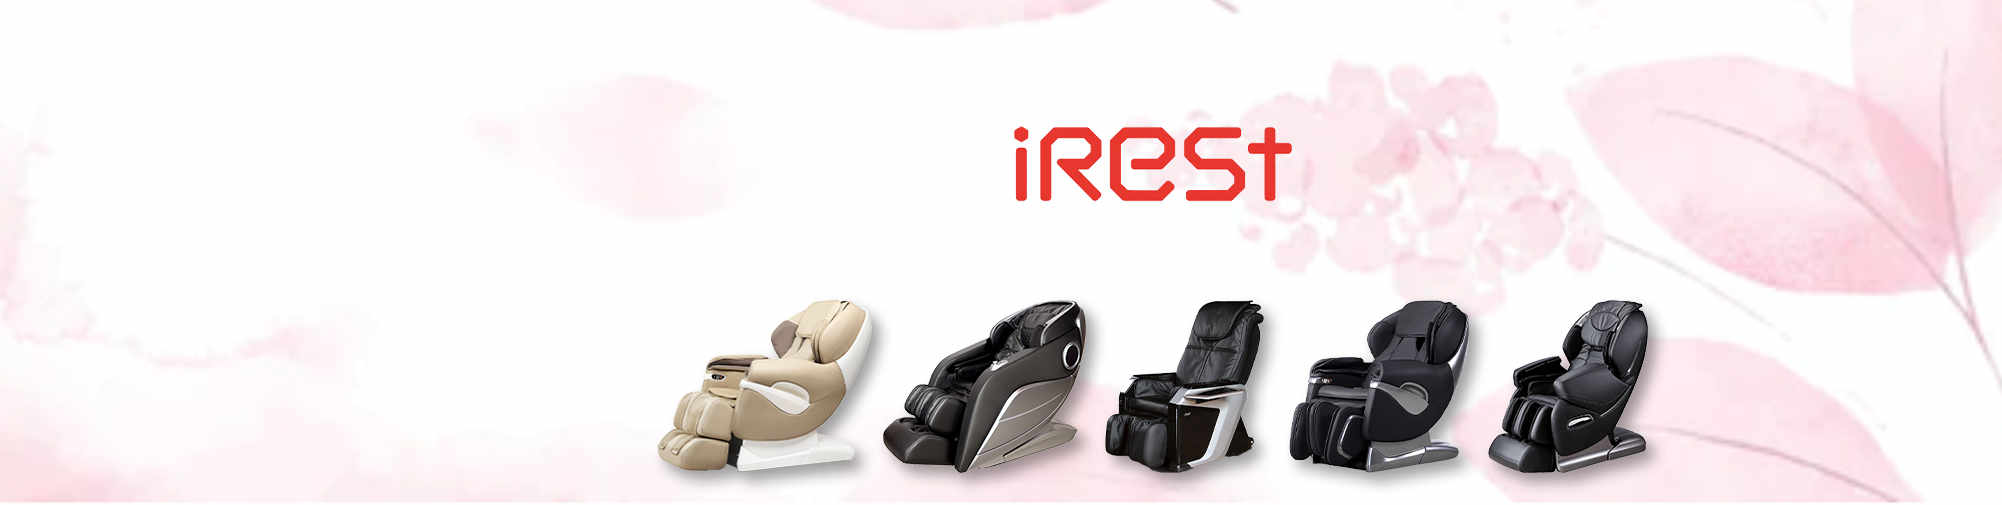 iRest - глоток свежего воздуха для рынка массажных кресел | Massagesessel Welt